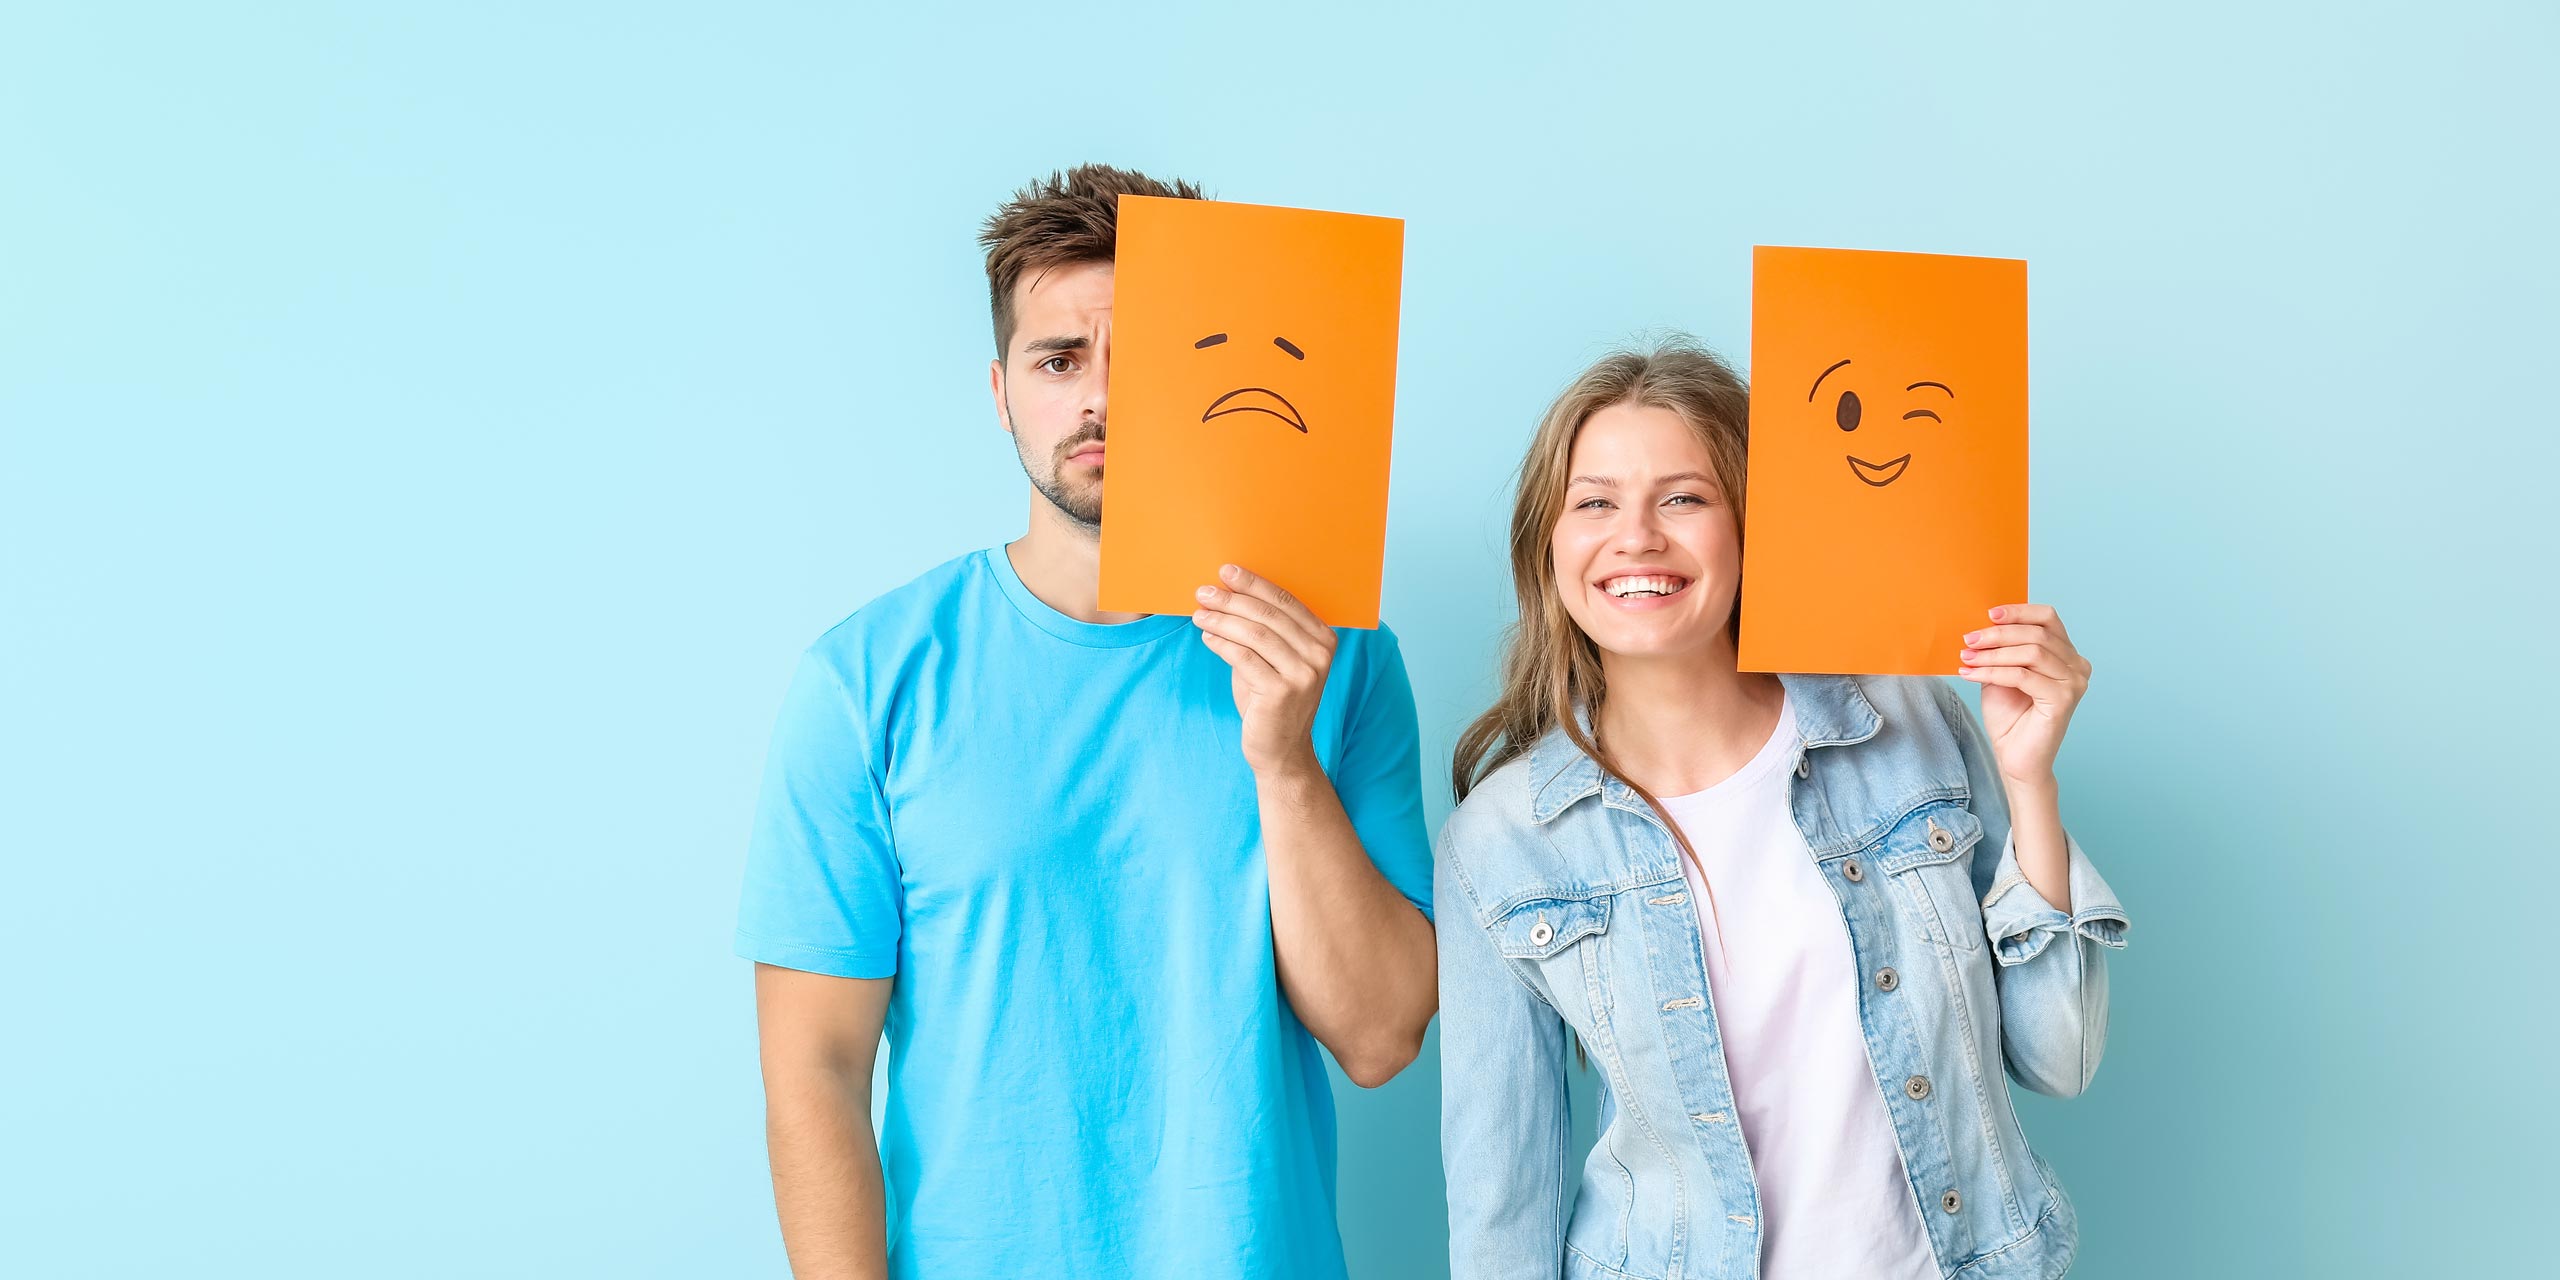 Junger Mann und junge Frau mit orangefarbenen Kartons, einer zeigt ein lächelndes, einer ein trauriges Gesicht.